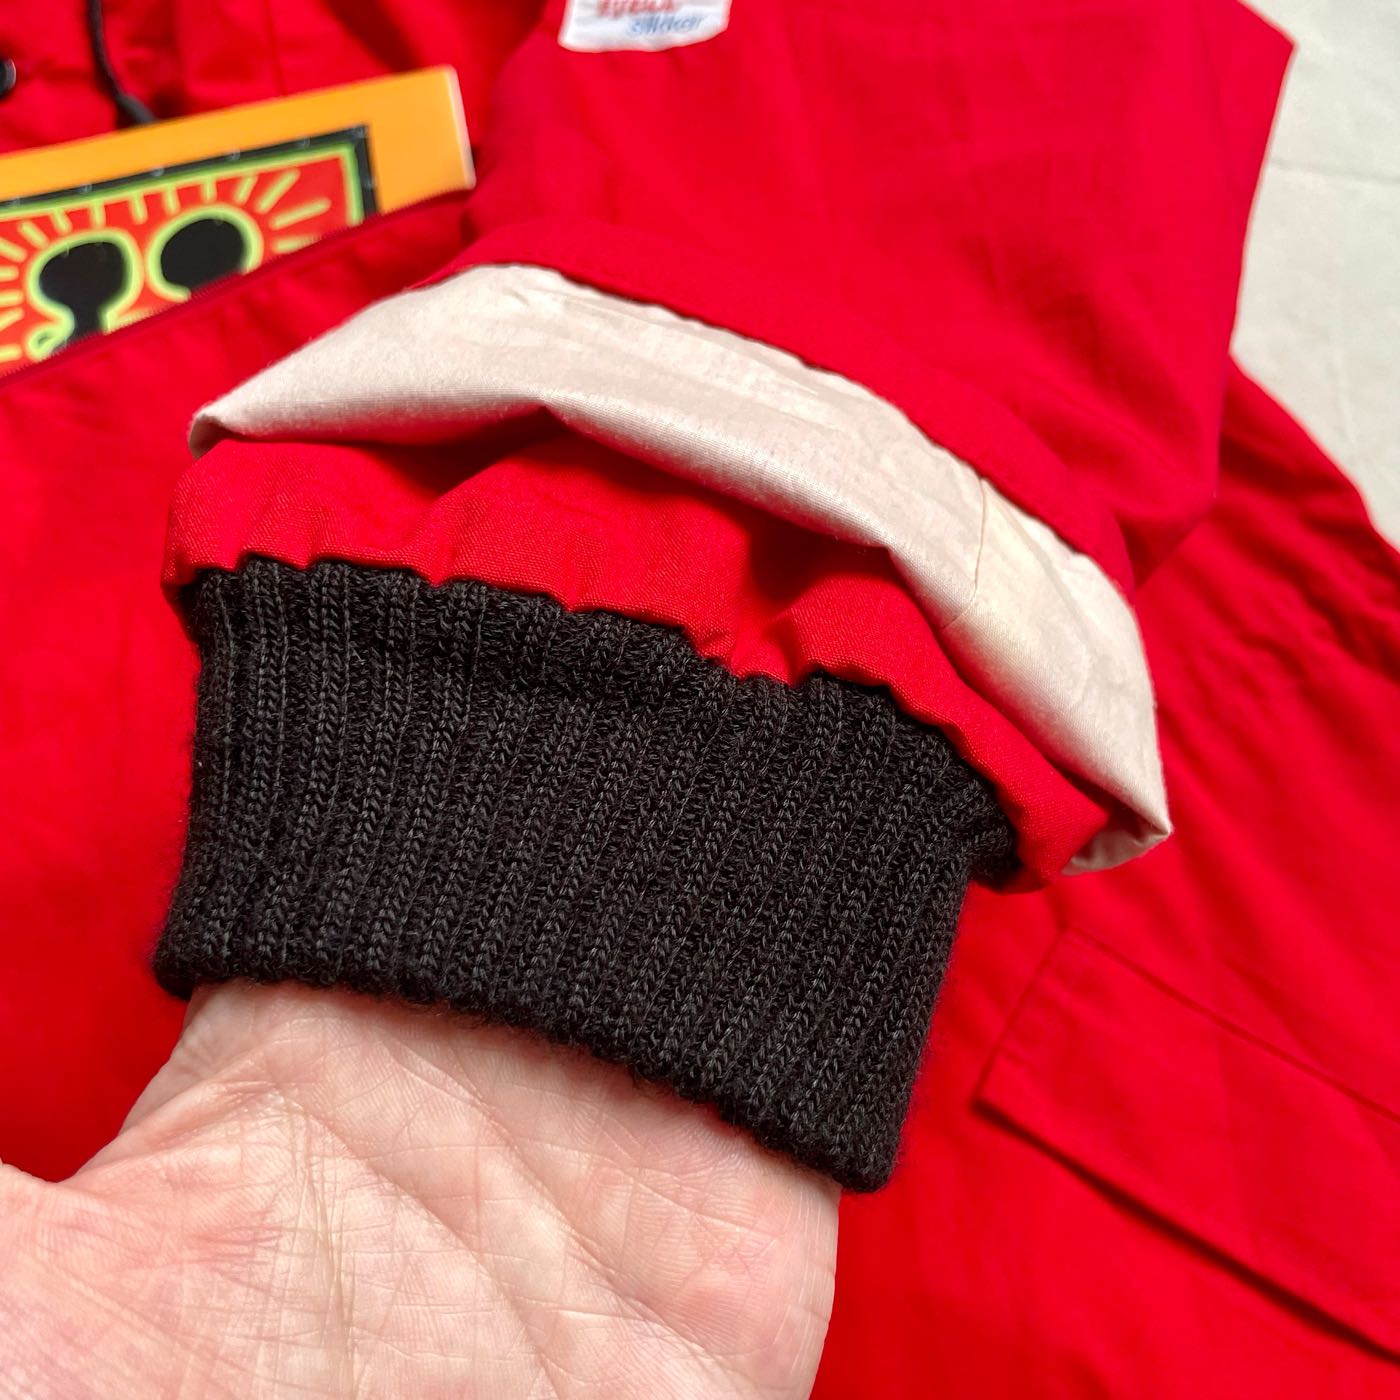 挪威製造Klover snow anorak 雪地用品連帽套頭風衣袋鼠袋三口袋vintage